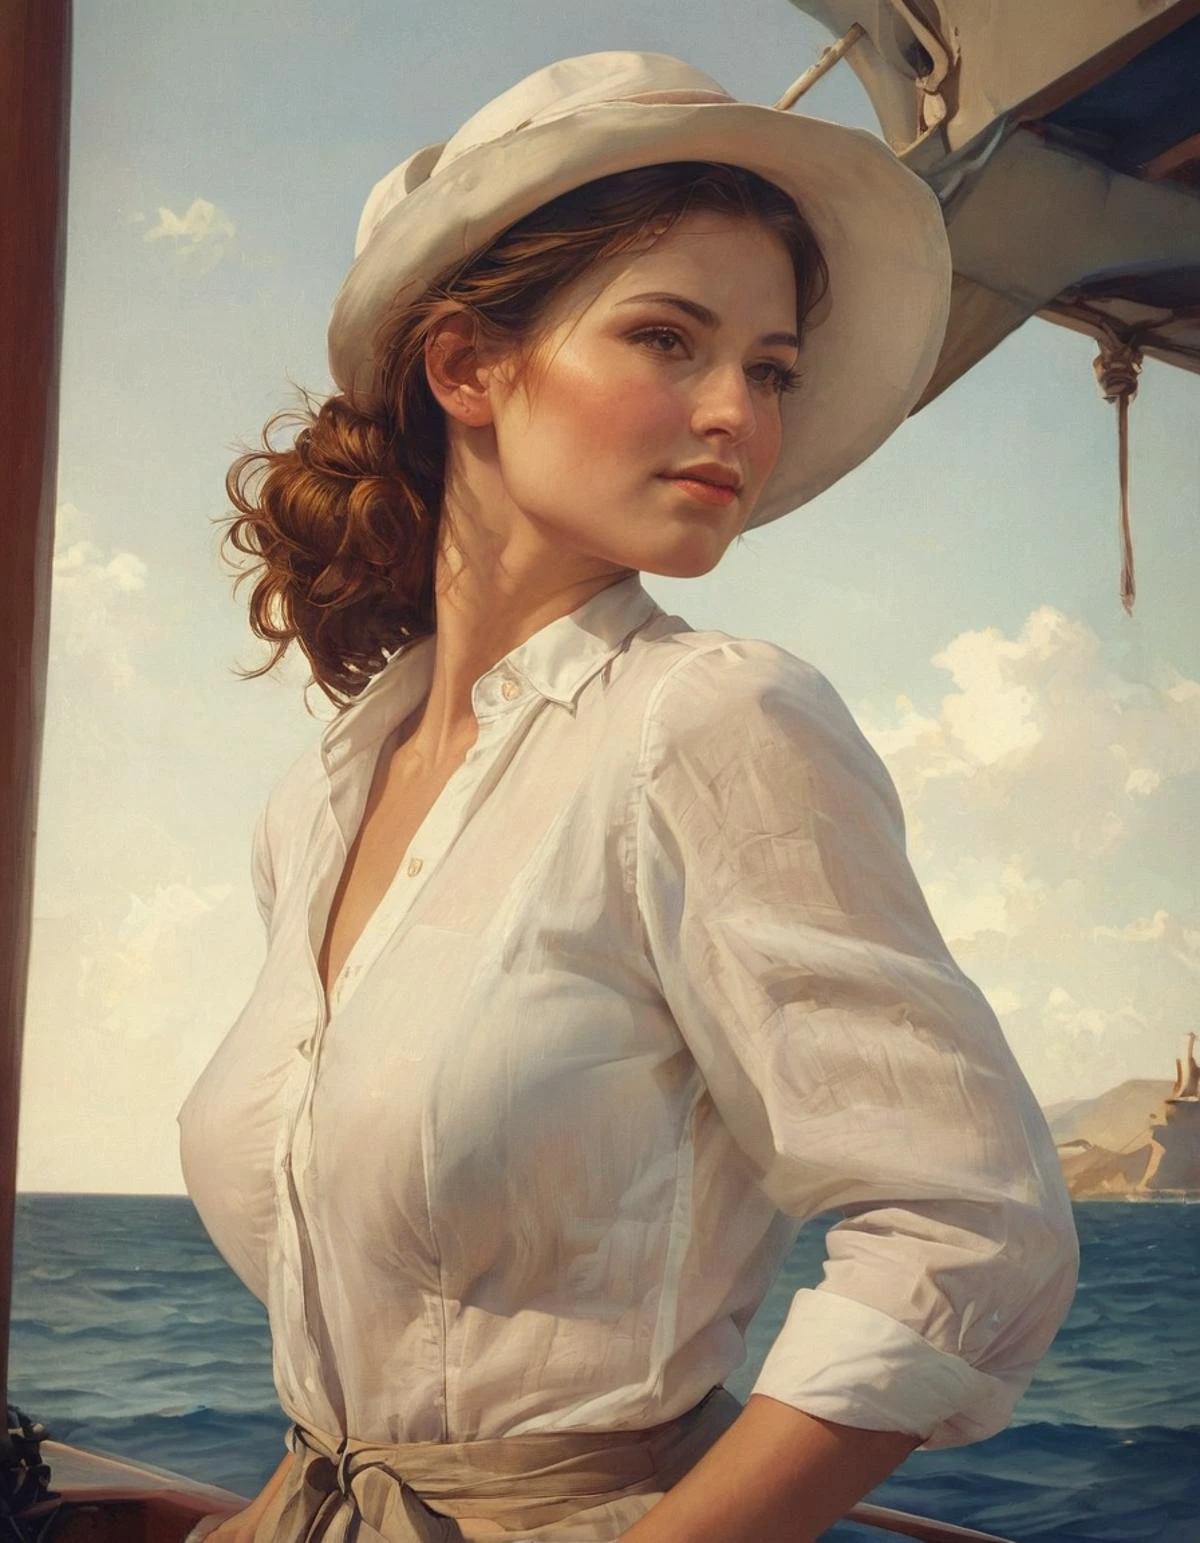 (肖像画), (閉じる), 船首に立つ女性, 肩越しに見る, 白い帽子を持ち上げる, ライトリネンシャツ, 赤褐色のお団子,イラスト, 映画のような, フィルム粒子垂れ乳, 不均一な胸